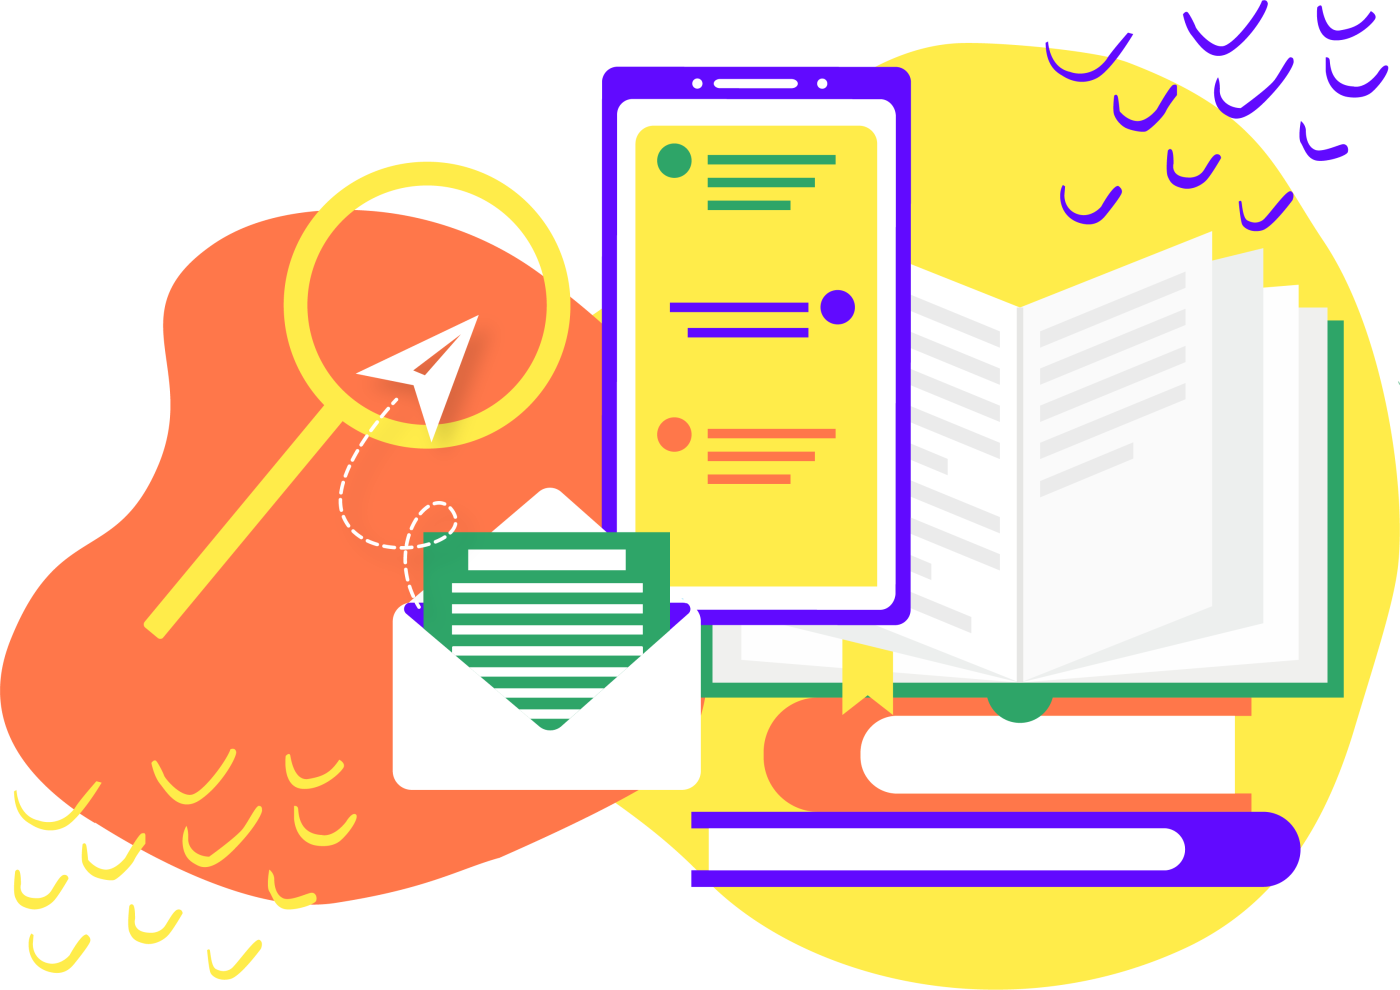 Ilustración de diferentes recursos agrupados, entre ellos un teléfono inteligente, un correo electrónico, libros y una lupa sobre fondo anaranjado y amarillo